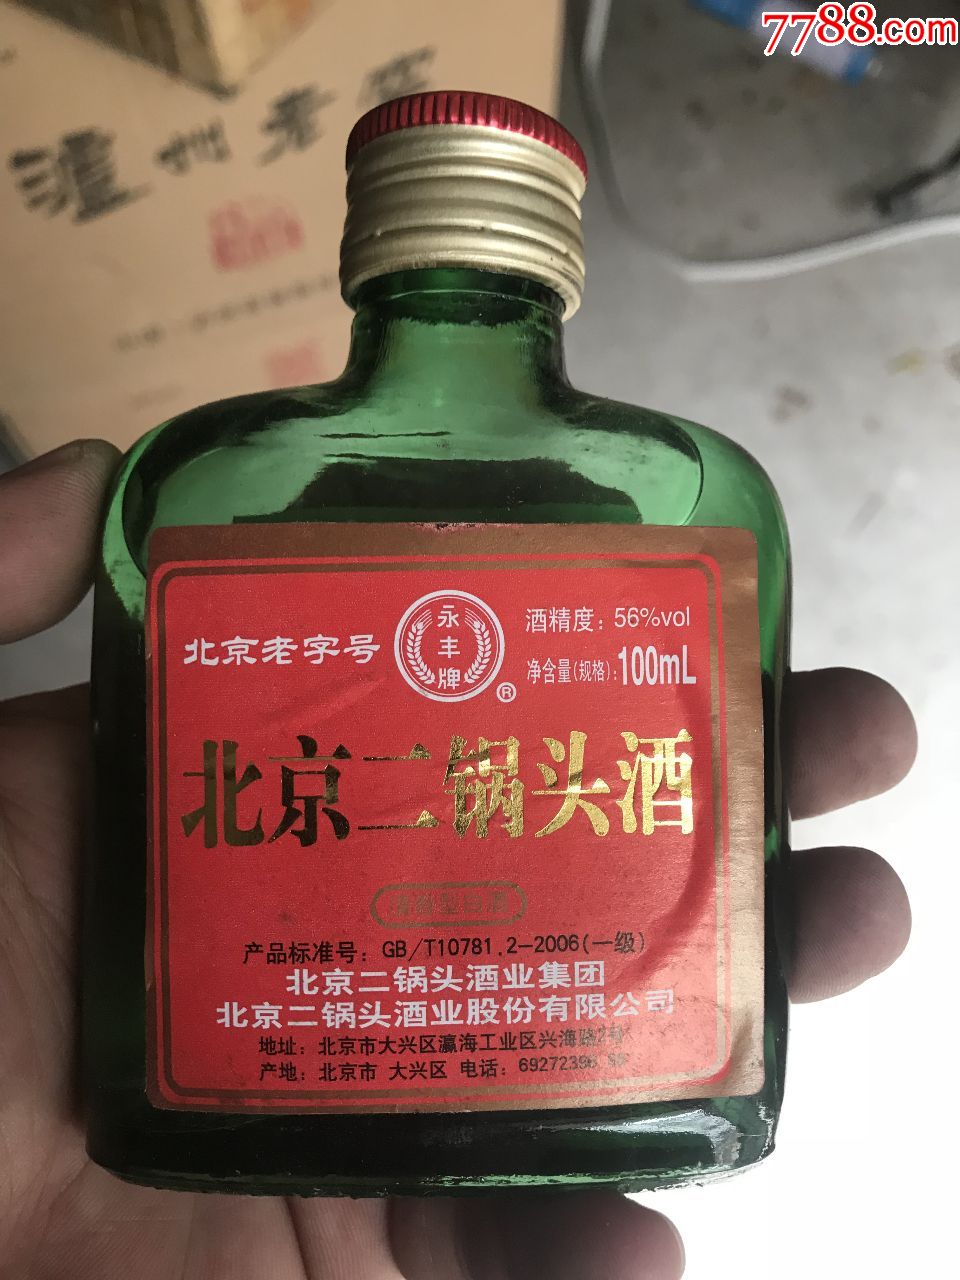 北京人喜欢喝老字号的二锅头麽?